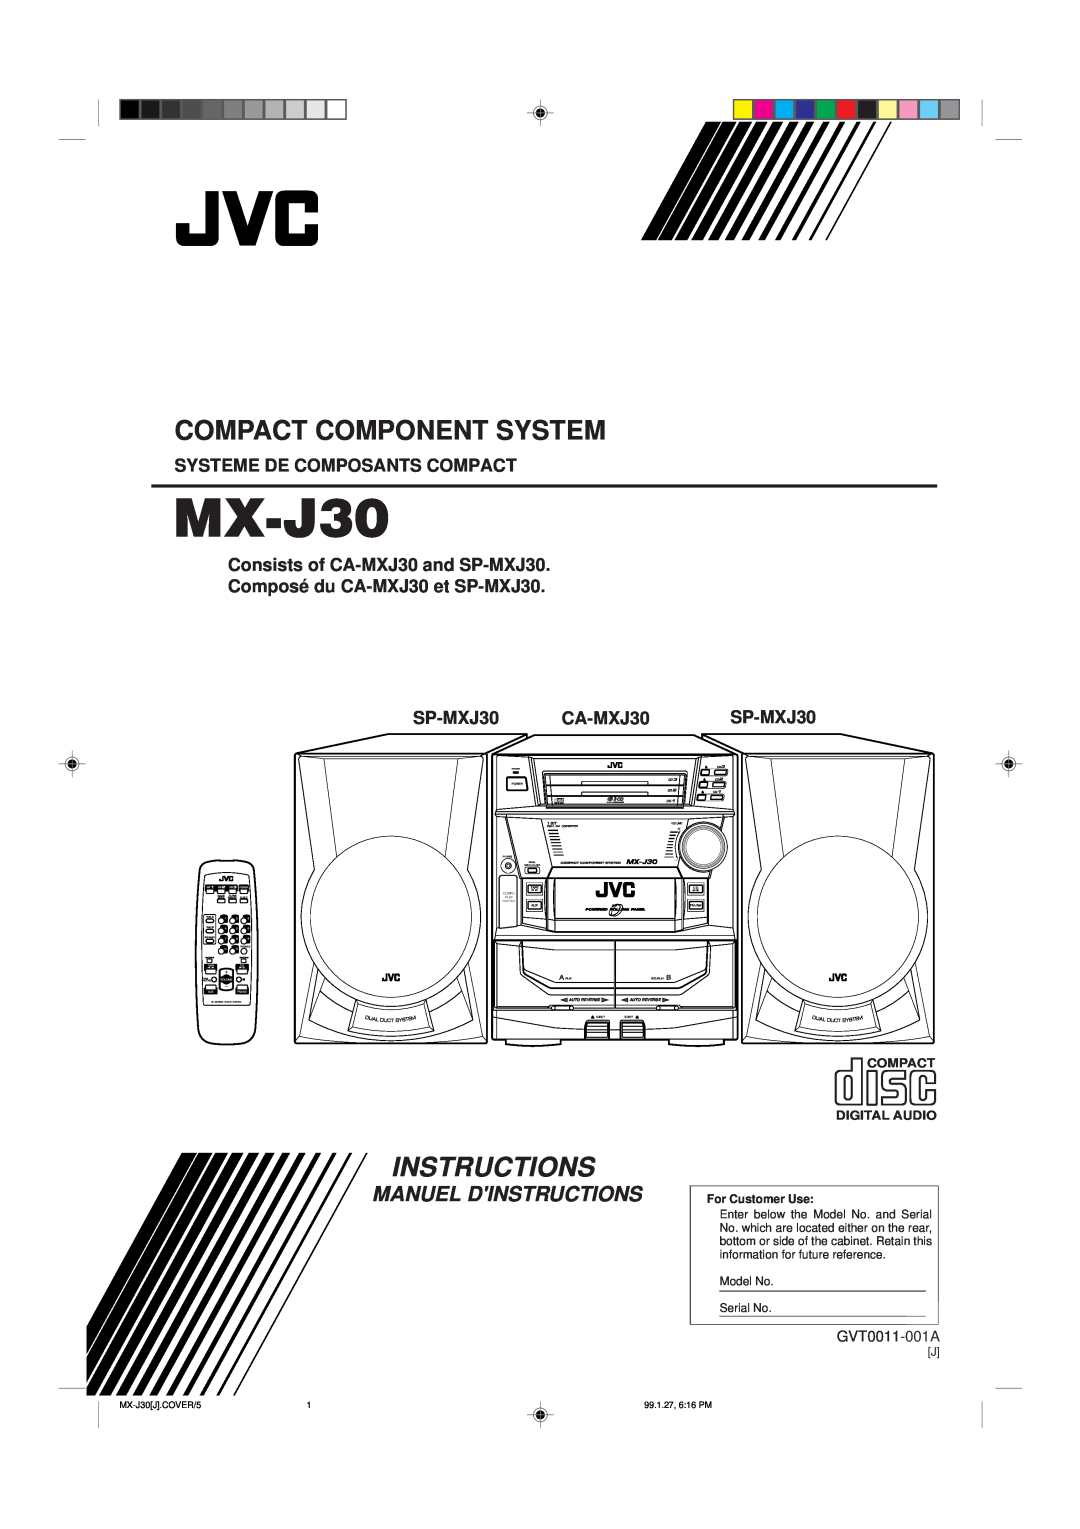 JVC MX-J30 manual Systeme De Composants Compact, Consists of CA-MXJ30 and SP-MXJ30 Composé du CA-MXJ30 et SP-MXJ30, Power 